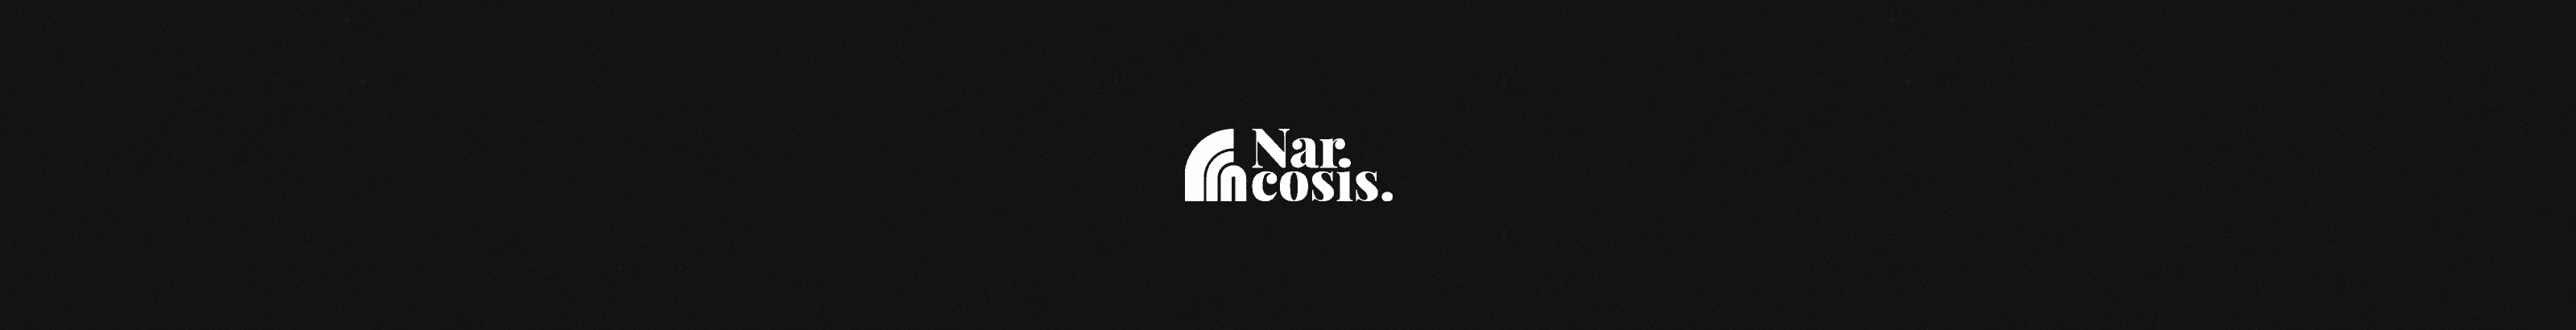 Narcosis banner